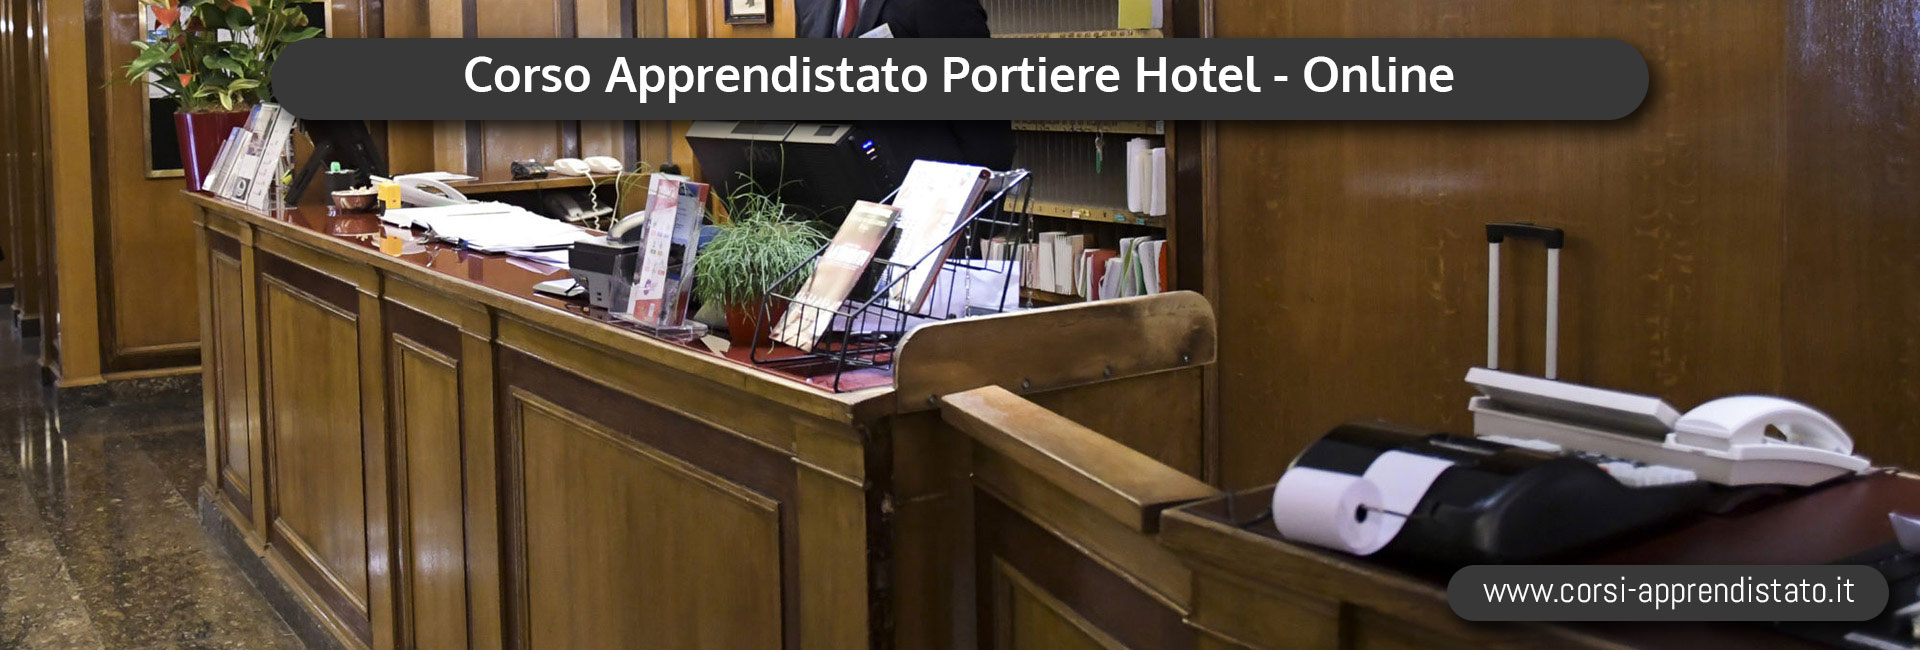 Apprendistato Portiere Hotel